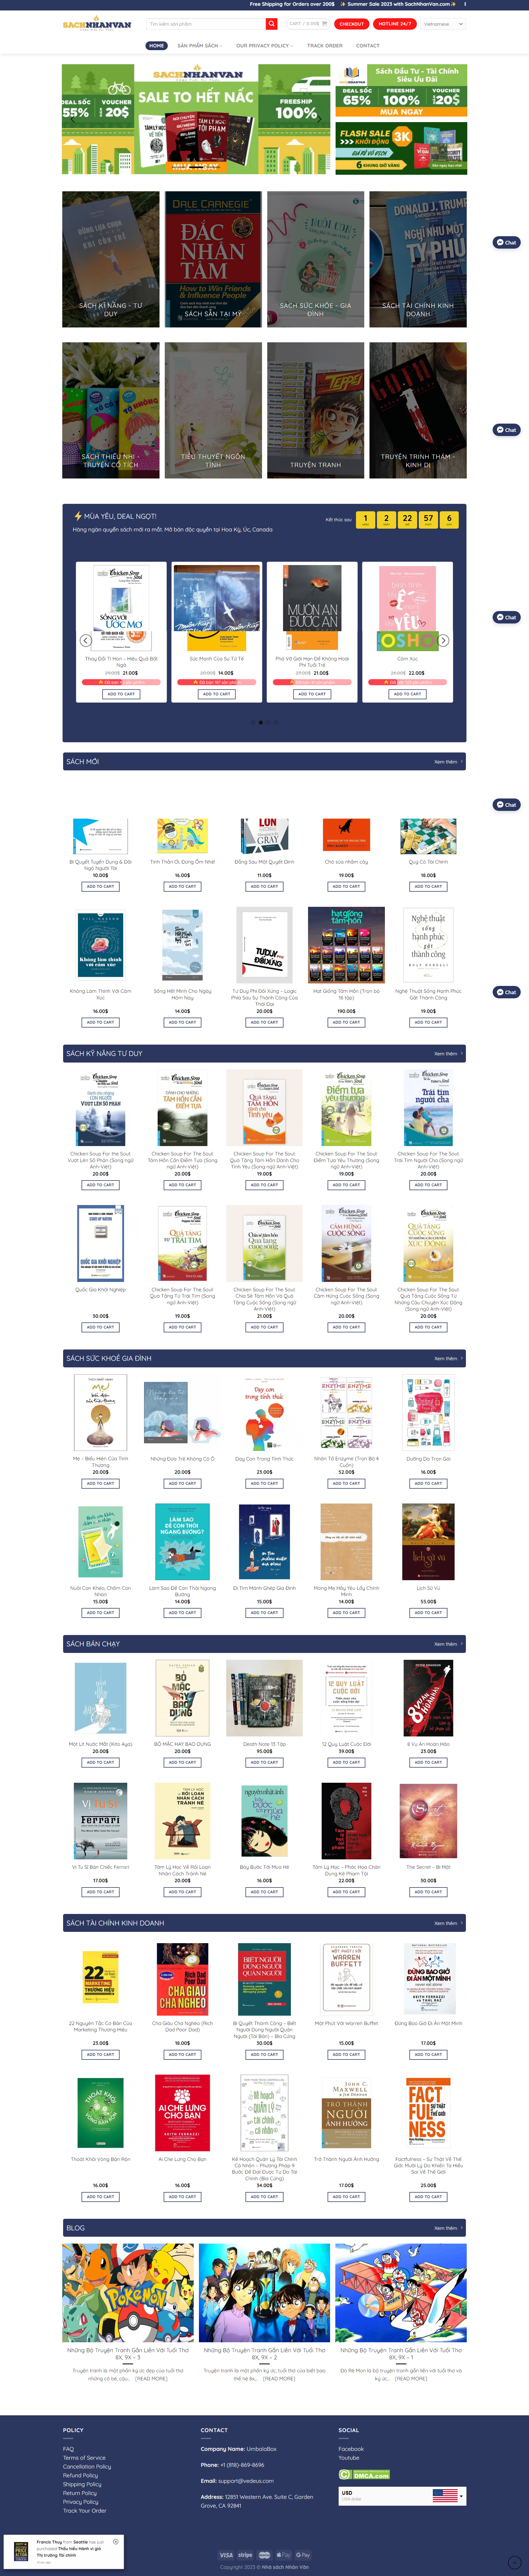 mẫu website bán sách đa ngôn ngữ sachnhanvan